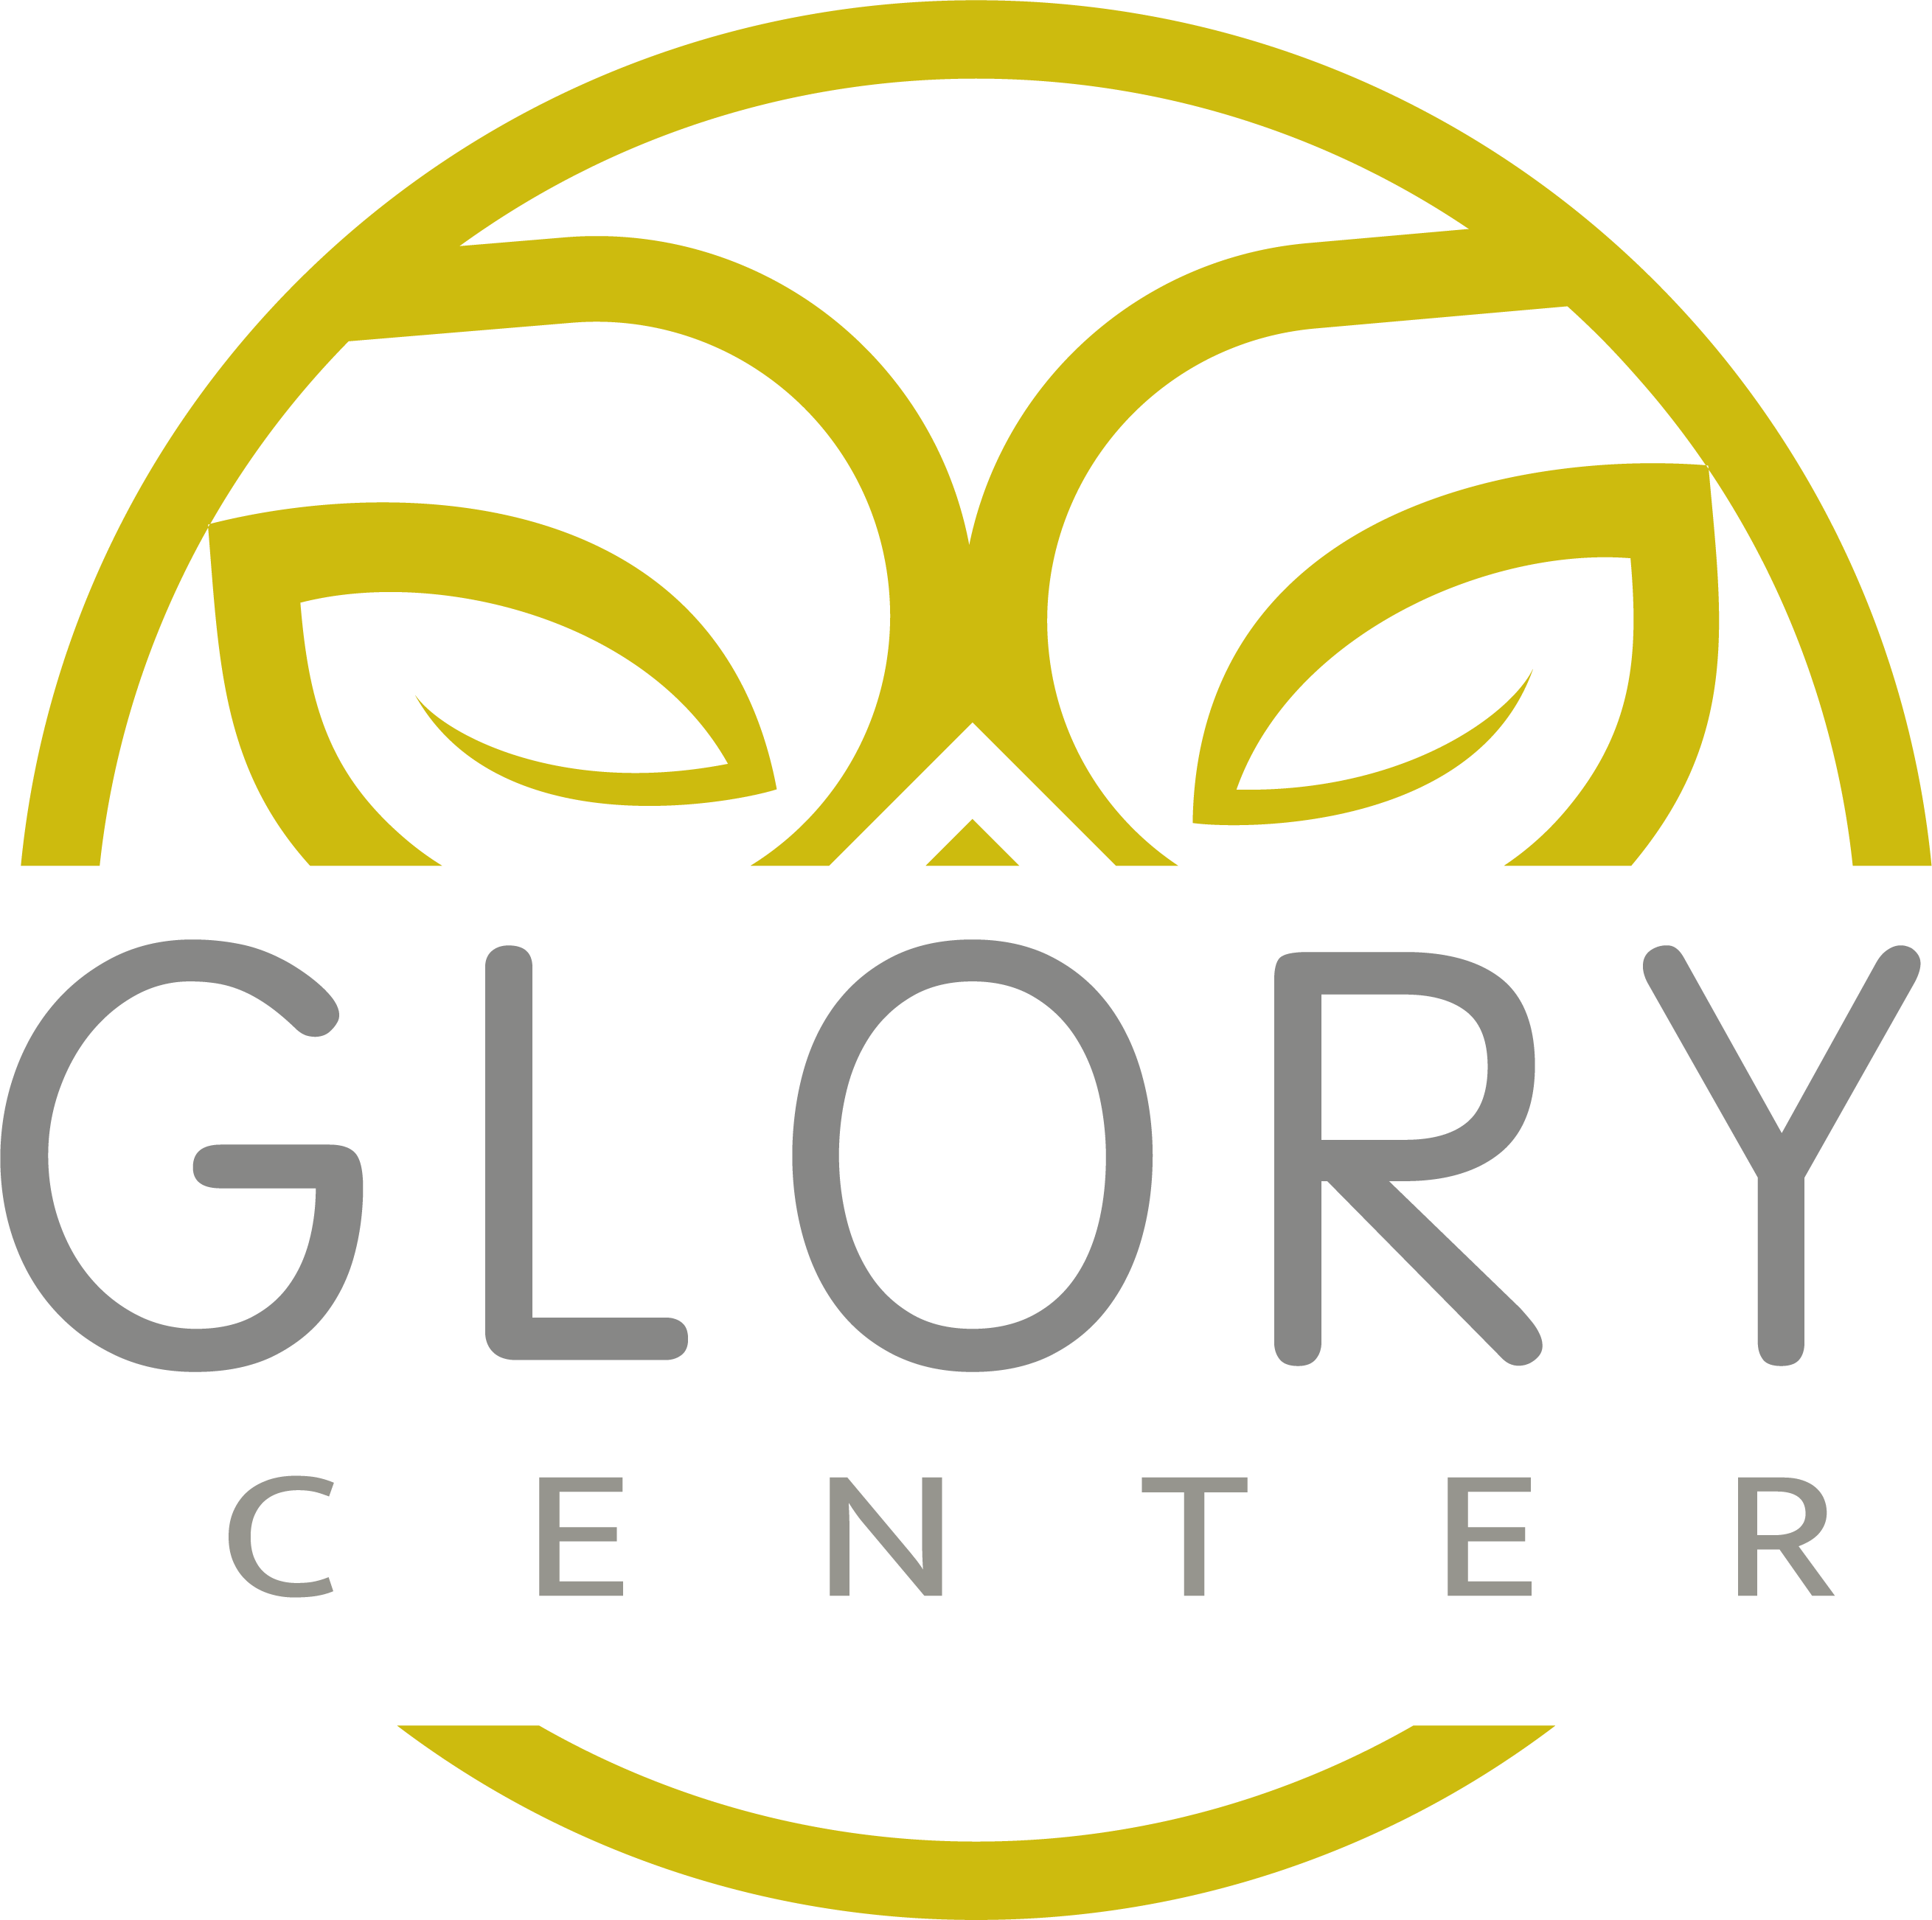 Glory Center – مركز متخصص في تقديم الجلسات المساهمة للتشافي بتقنيات متقدمة  كما يقدم الدورات والكورسات المتخصصة